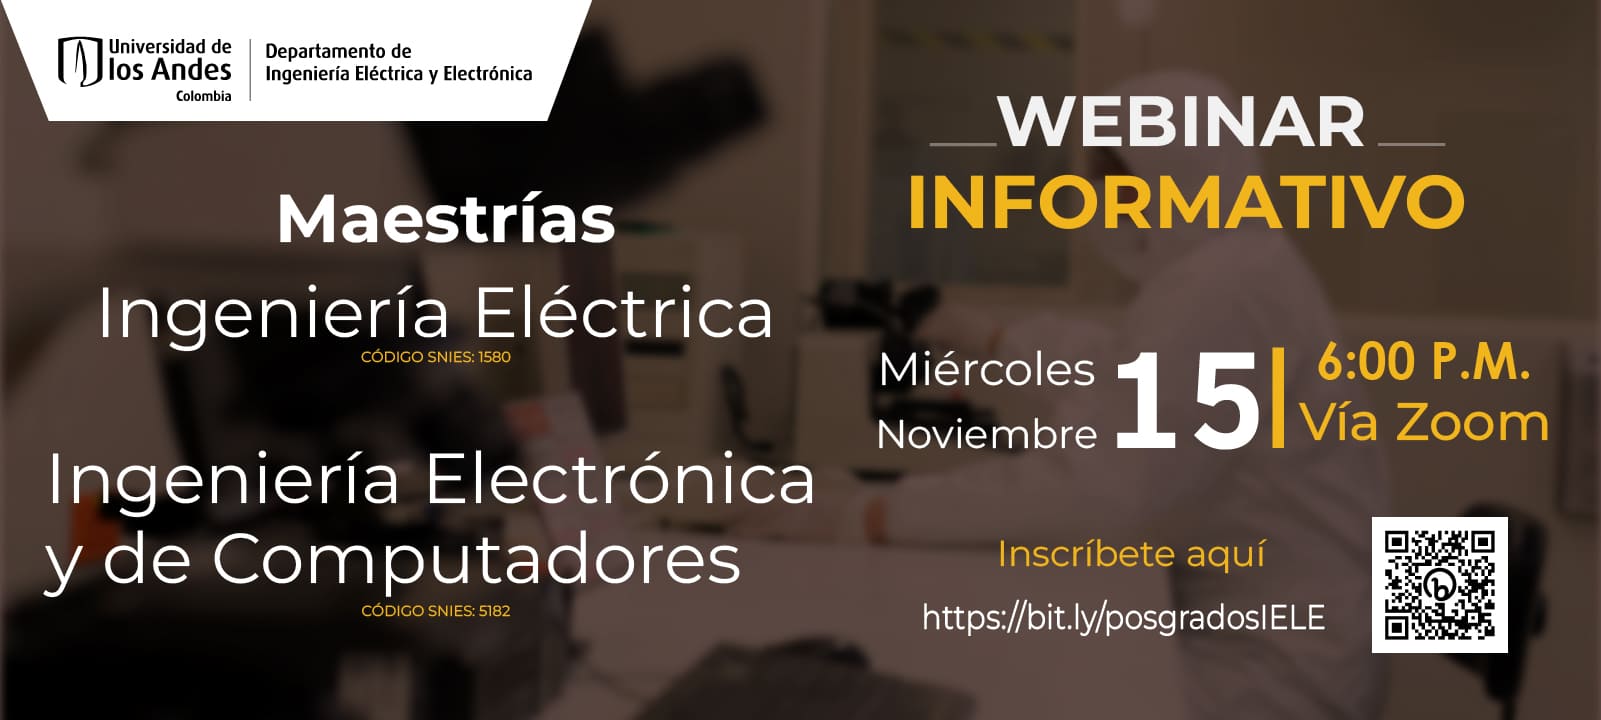 Banner Webinar Informativo- Posgrados IELE